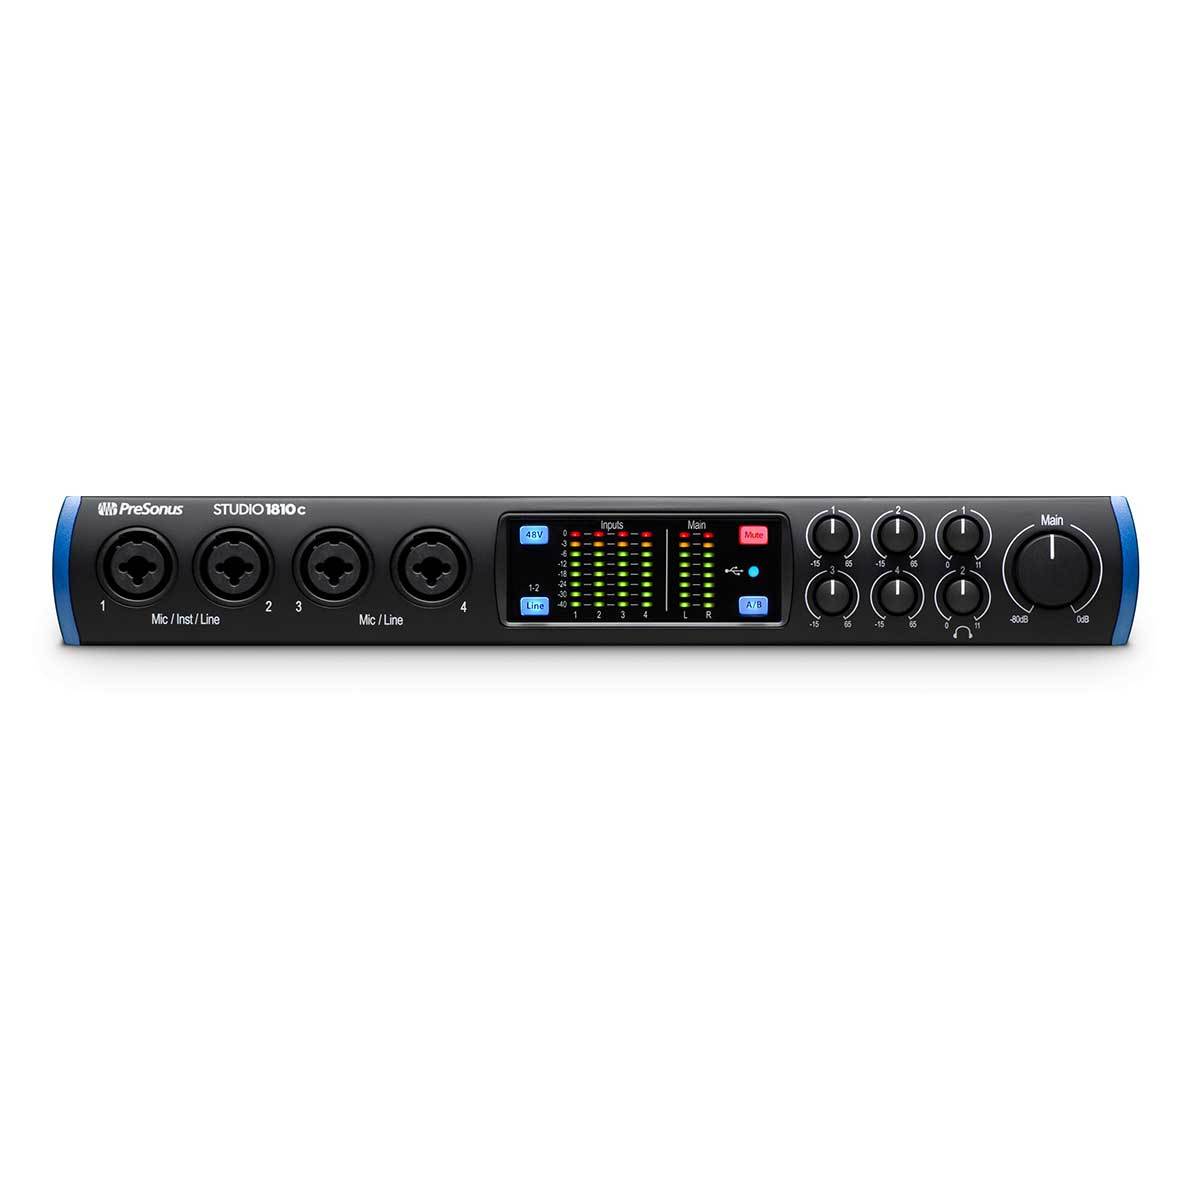 USB-C Audio Interfaces - PreSonus Studio 1810c USB-C Audio Interface